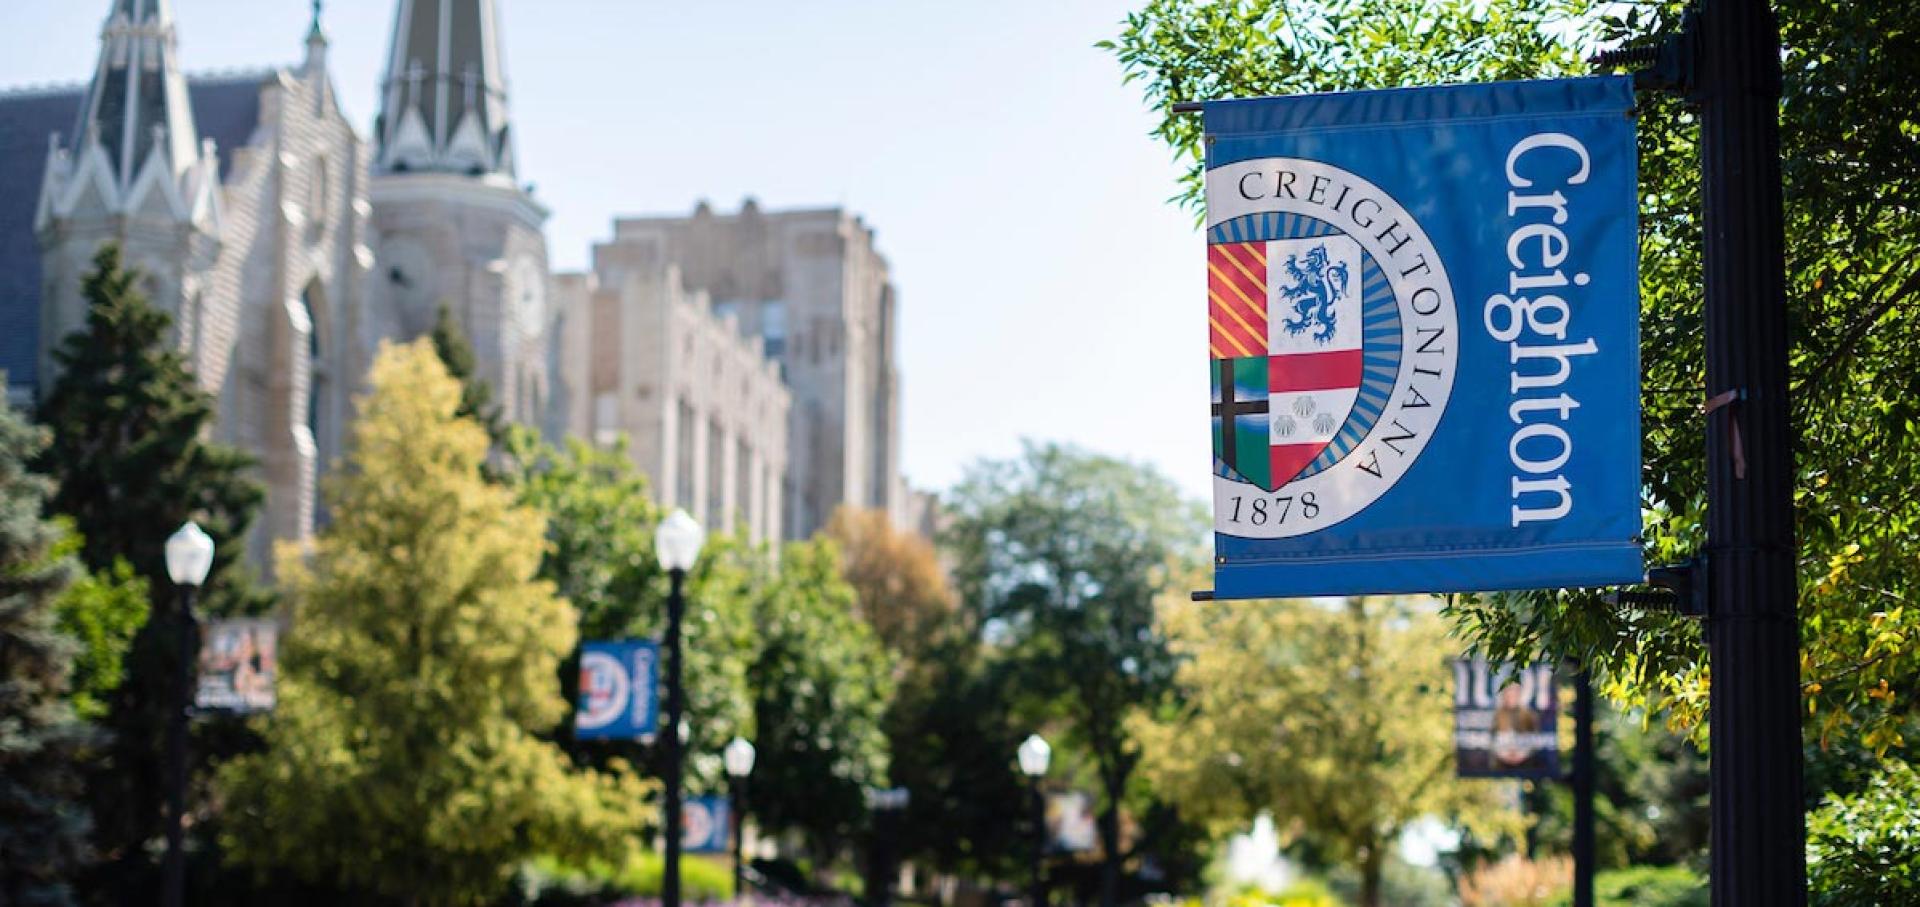 Campus exterior focused on blue Creighton banner